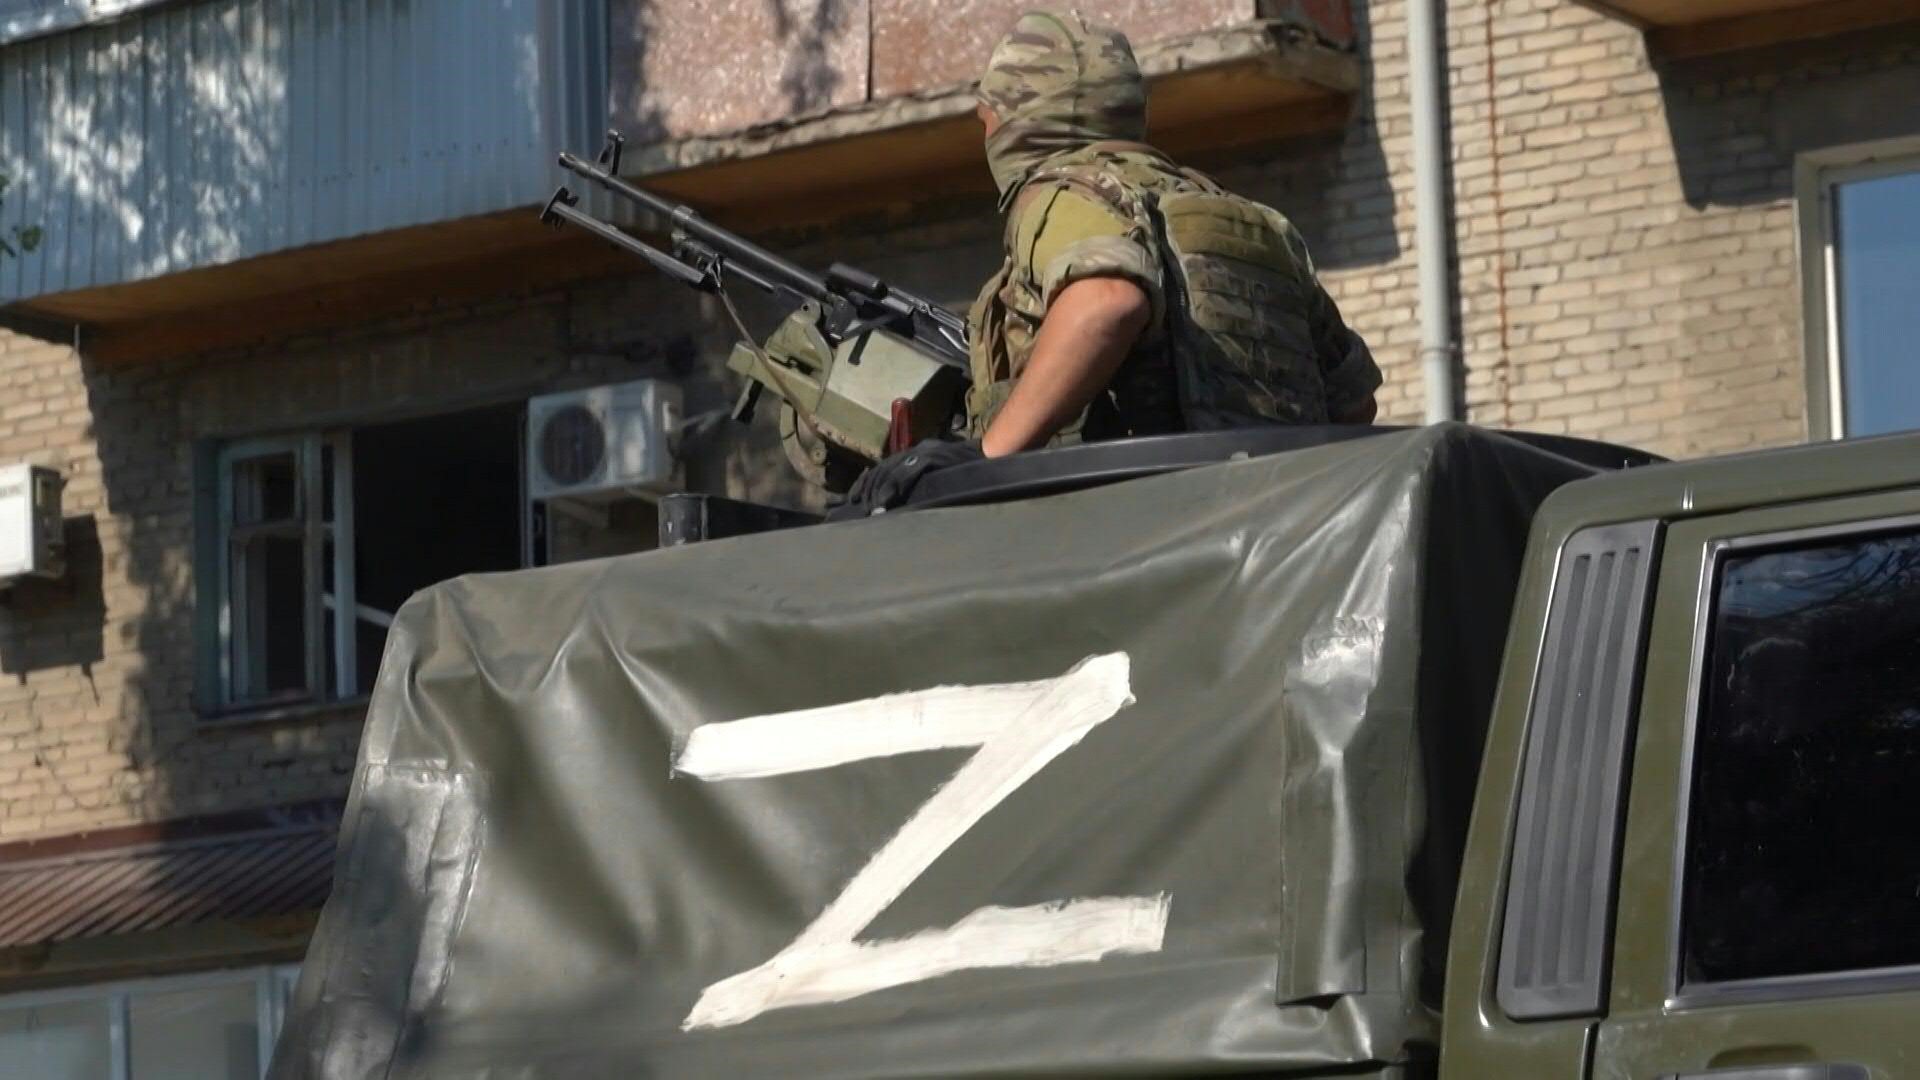 El ejército ucraniano anunció el lunes que las tropas rusas habían logrado expulsar a sus soldados del centro de Severodonetsk, ciudad clave del este de Ucrania por cuyo control se enfrentan ambos bandos desde hace semanas.